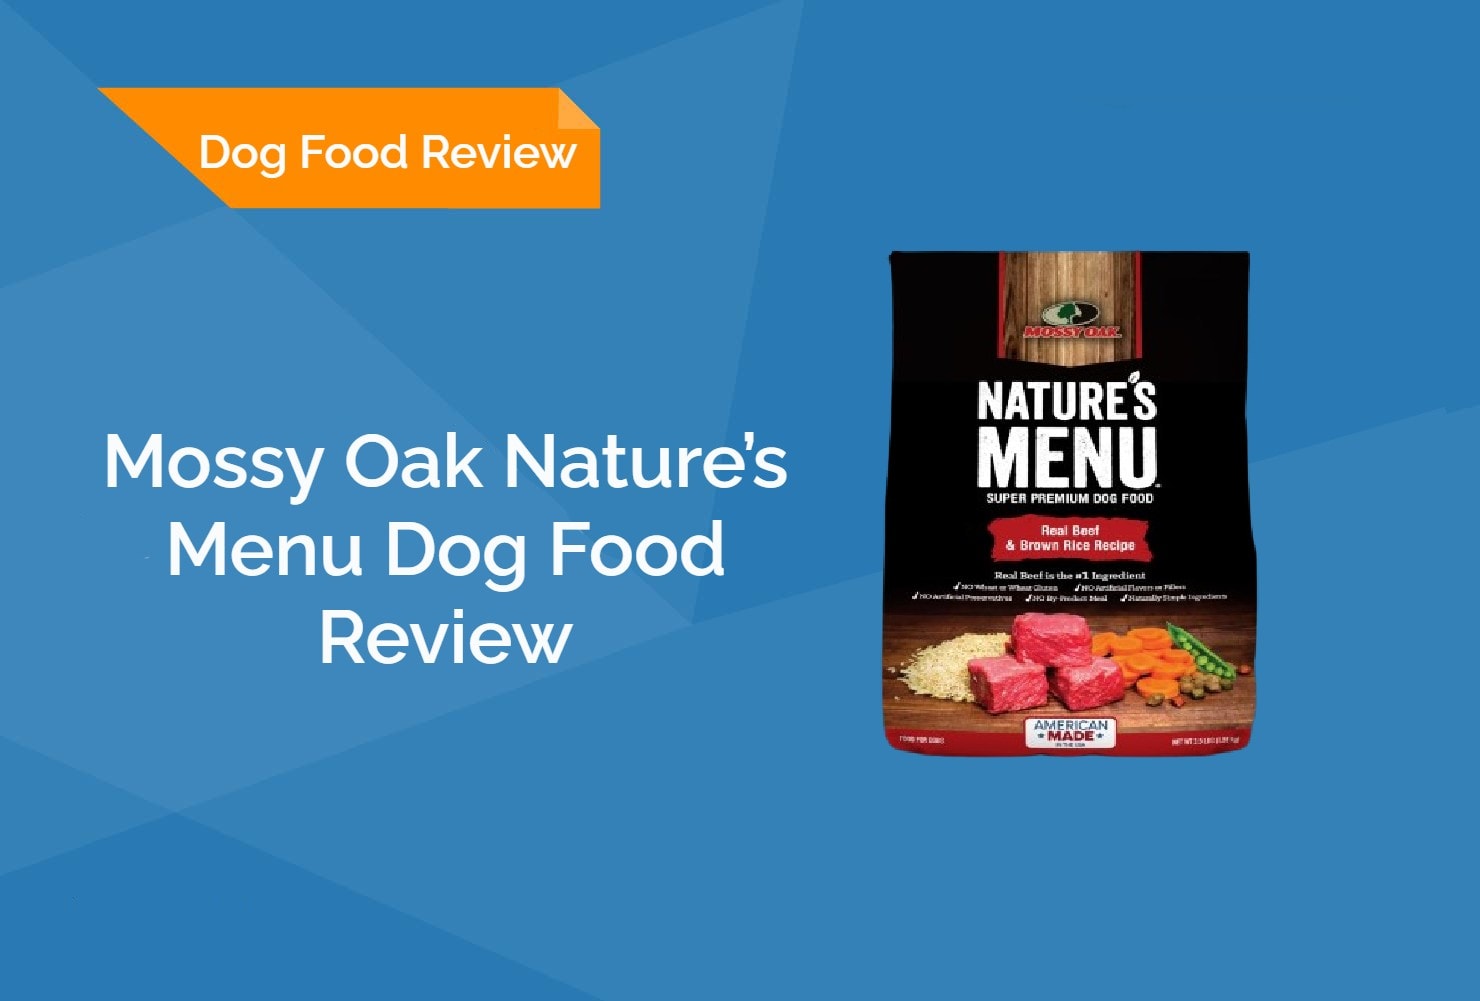 Mossy Oak Nature’s Menu Dog Food Review